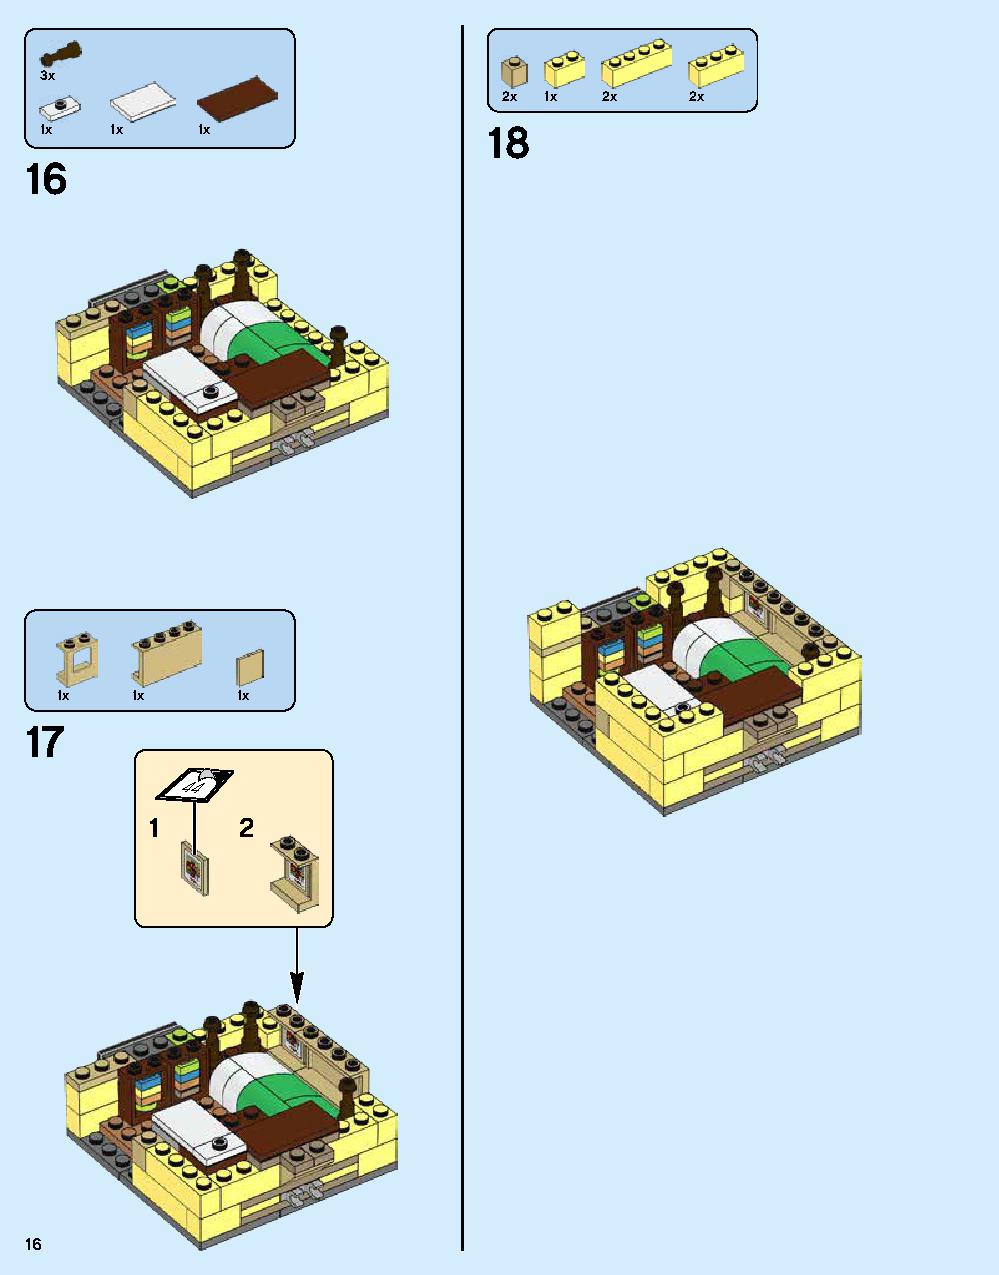 ニンジャゴー シティ 70620 レゴの商品情報 レゴの説明書・組立方法 16 page